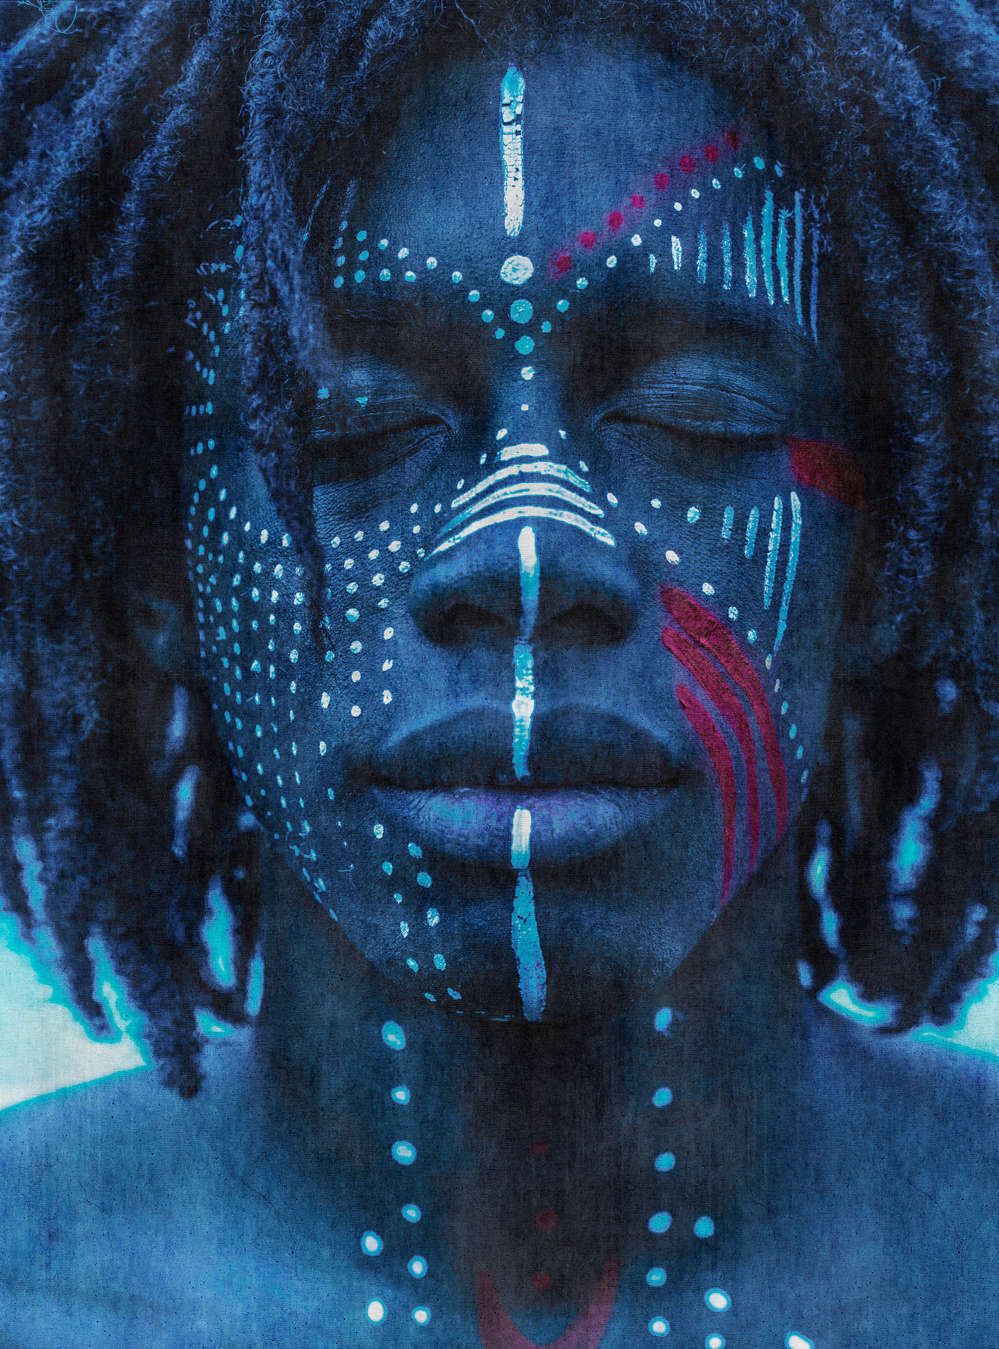             Fotomural »mikala« - Retrato africano azul con estructura de tapiz - Material no tejido de alta calidad, liso y ligeramente brillante
        